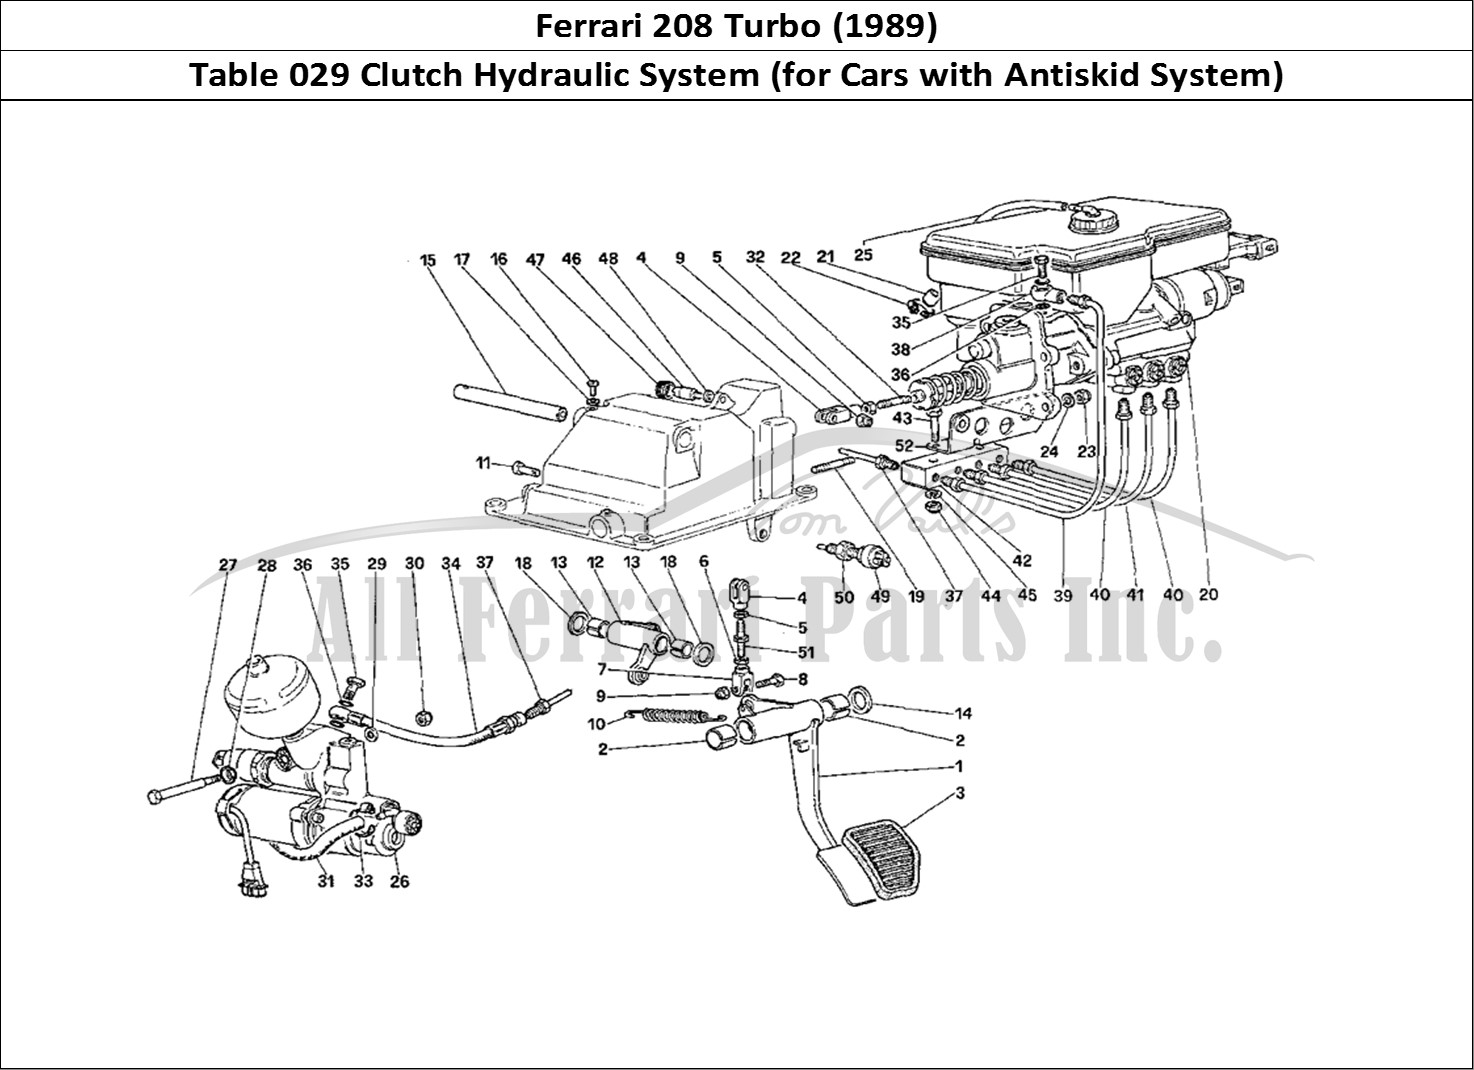 Ferrari Parts Ferrari 208 Turbo (1989) Page 029 Clutch Hydraulic System (